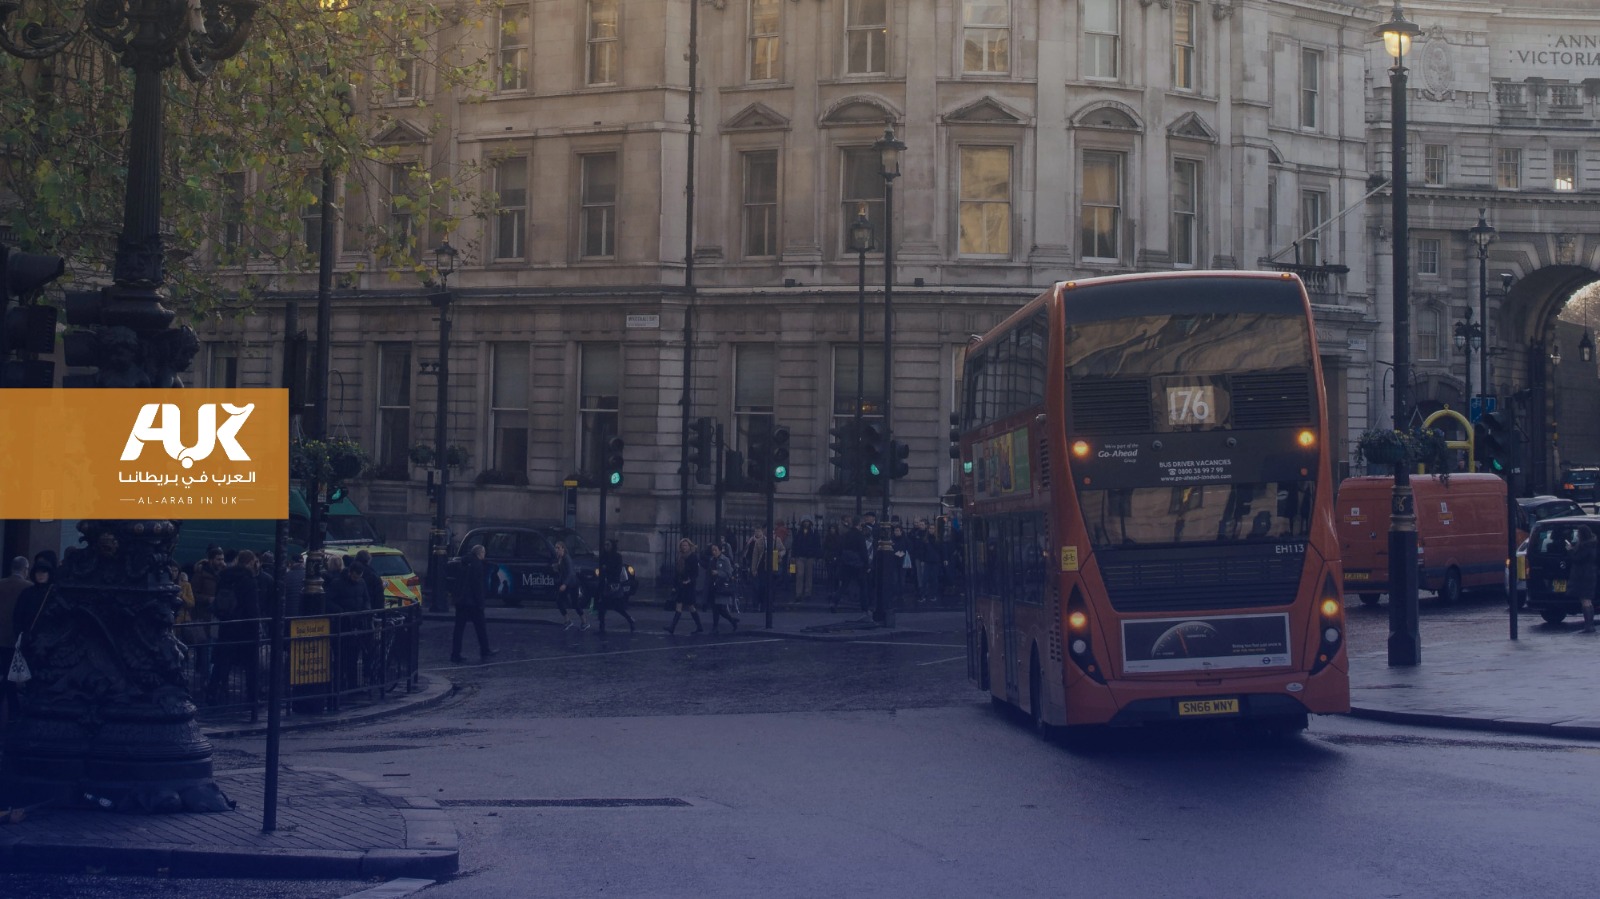 خدمات الحافلات تقل بنسبة تزيد عن 80% في أنحاء بريطانيا منذ عام 2008